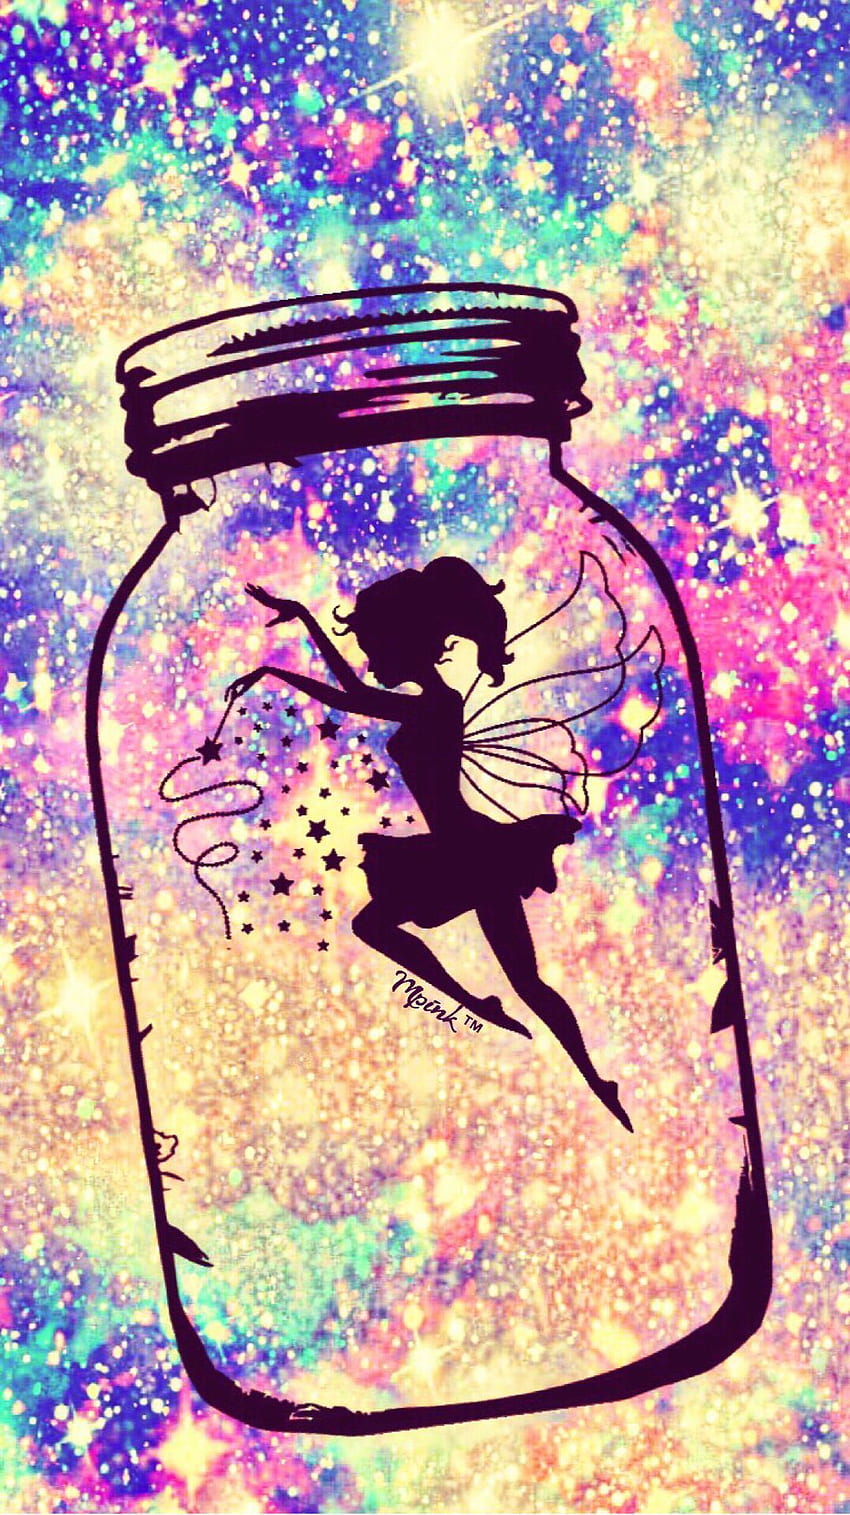 Fairy In A Jar Galaxy fondo de pantalla del teléfono